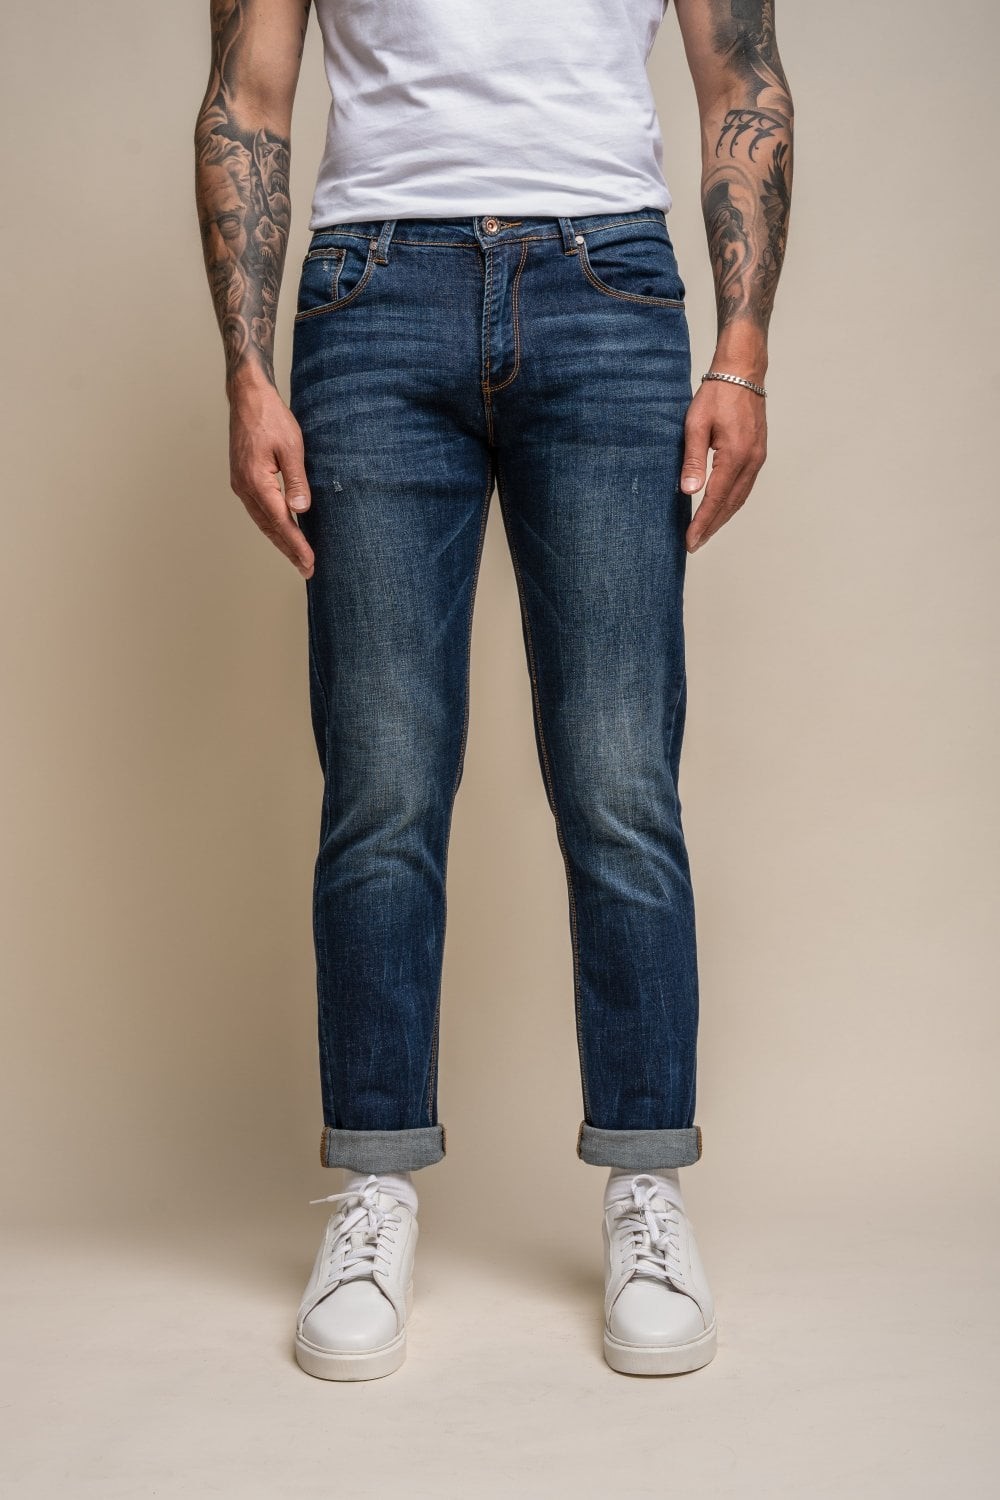 Men's Casual Slim Fit Denim Stretch Jeans